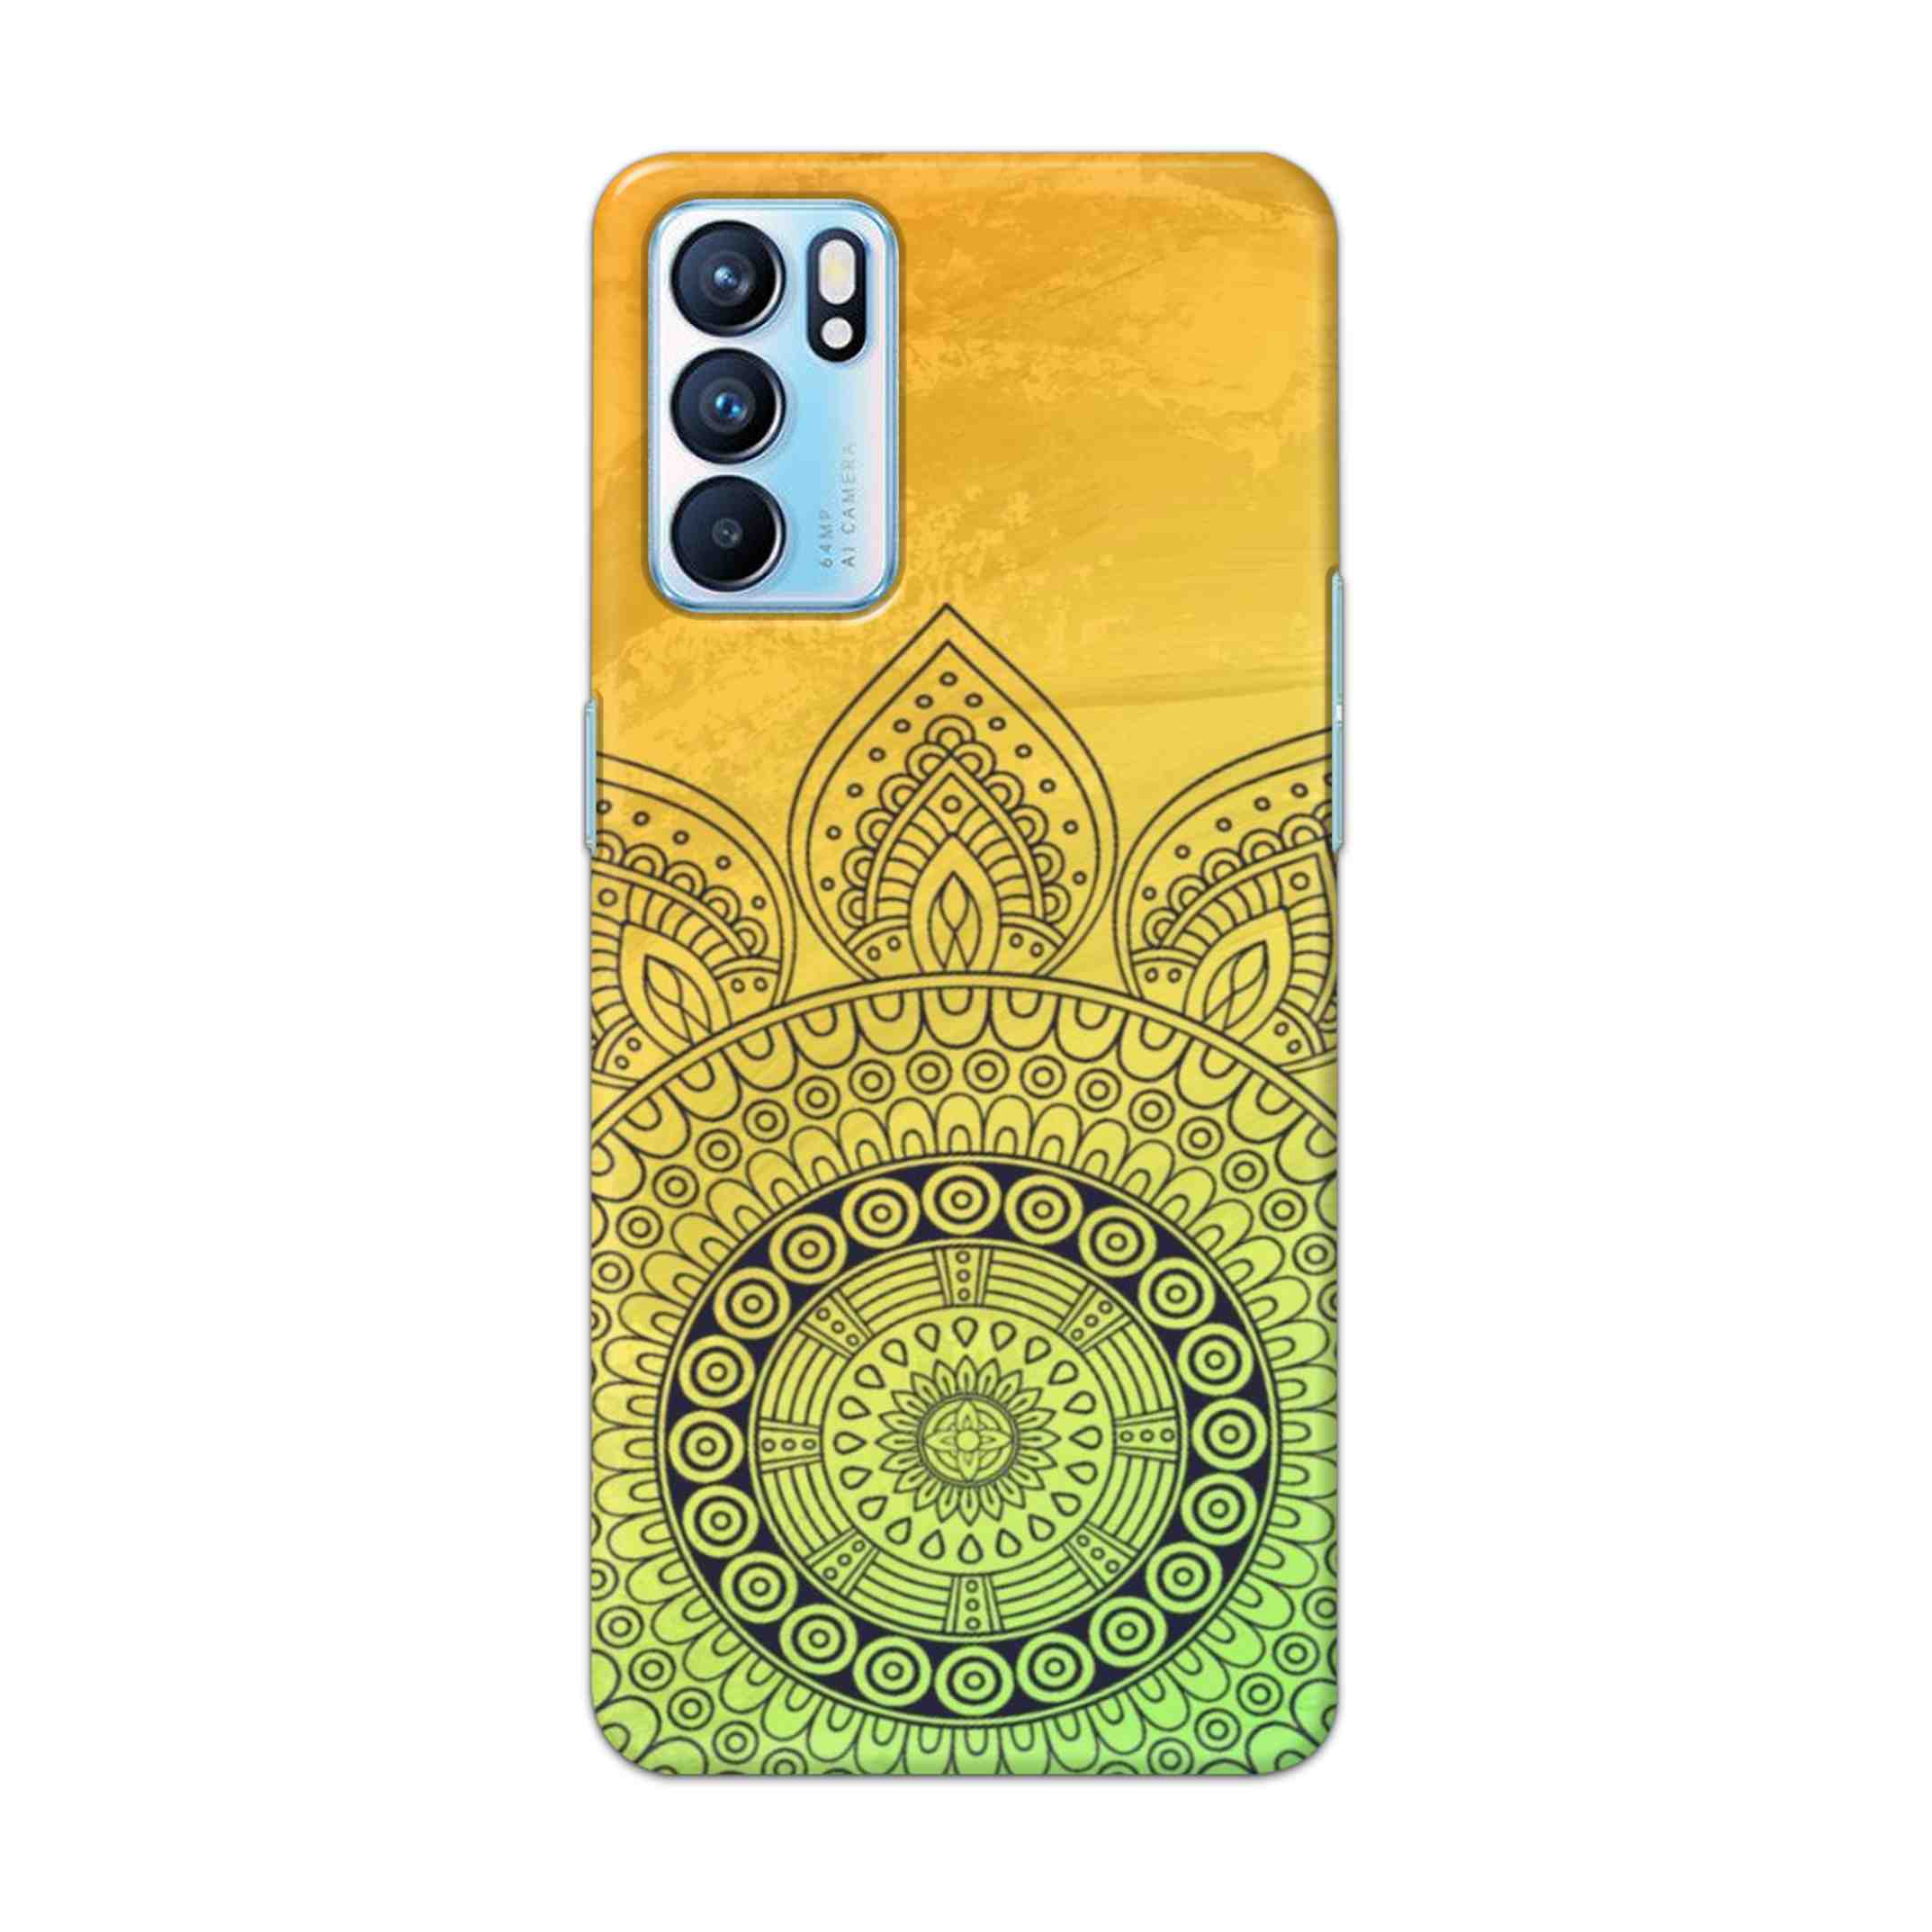 Buy Yellow Rangoli Hard Back Mobile Phone Case Cover For OPPO RENO 6 5G Online